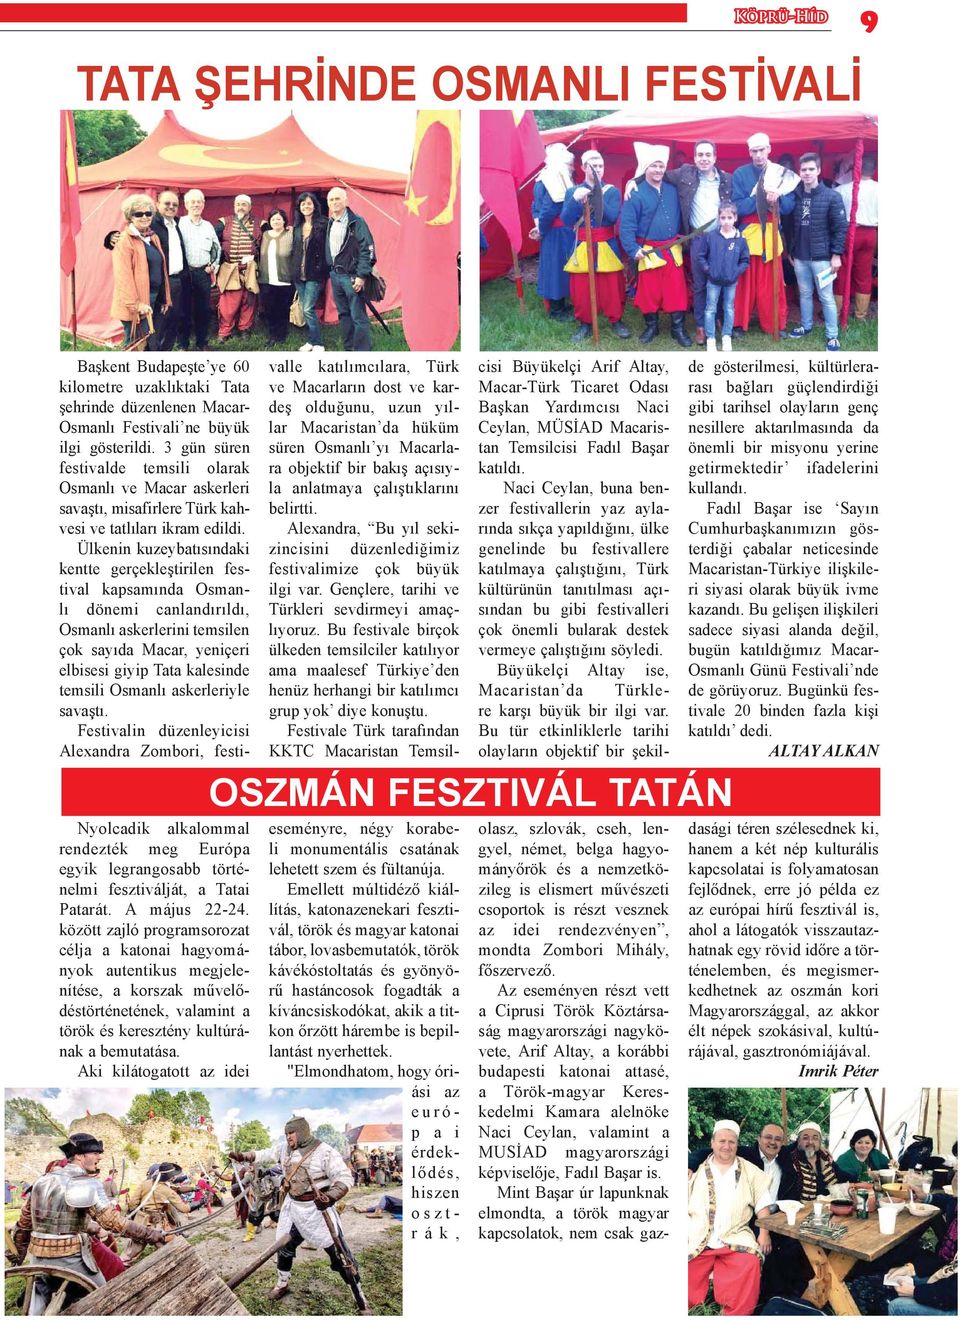 Ülkenin kuzeybatısındaki kentte gerçekleştirilen festival kapsamında Osmanlı dönemi canlandırıldı, Osmanlı askerlerini temsilen çok sayıda Macar, yeniçeri elbisesi giyip Tata kalesinde temsili